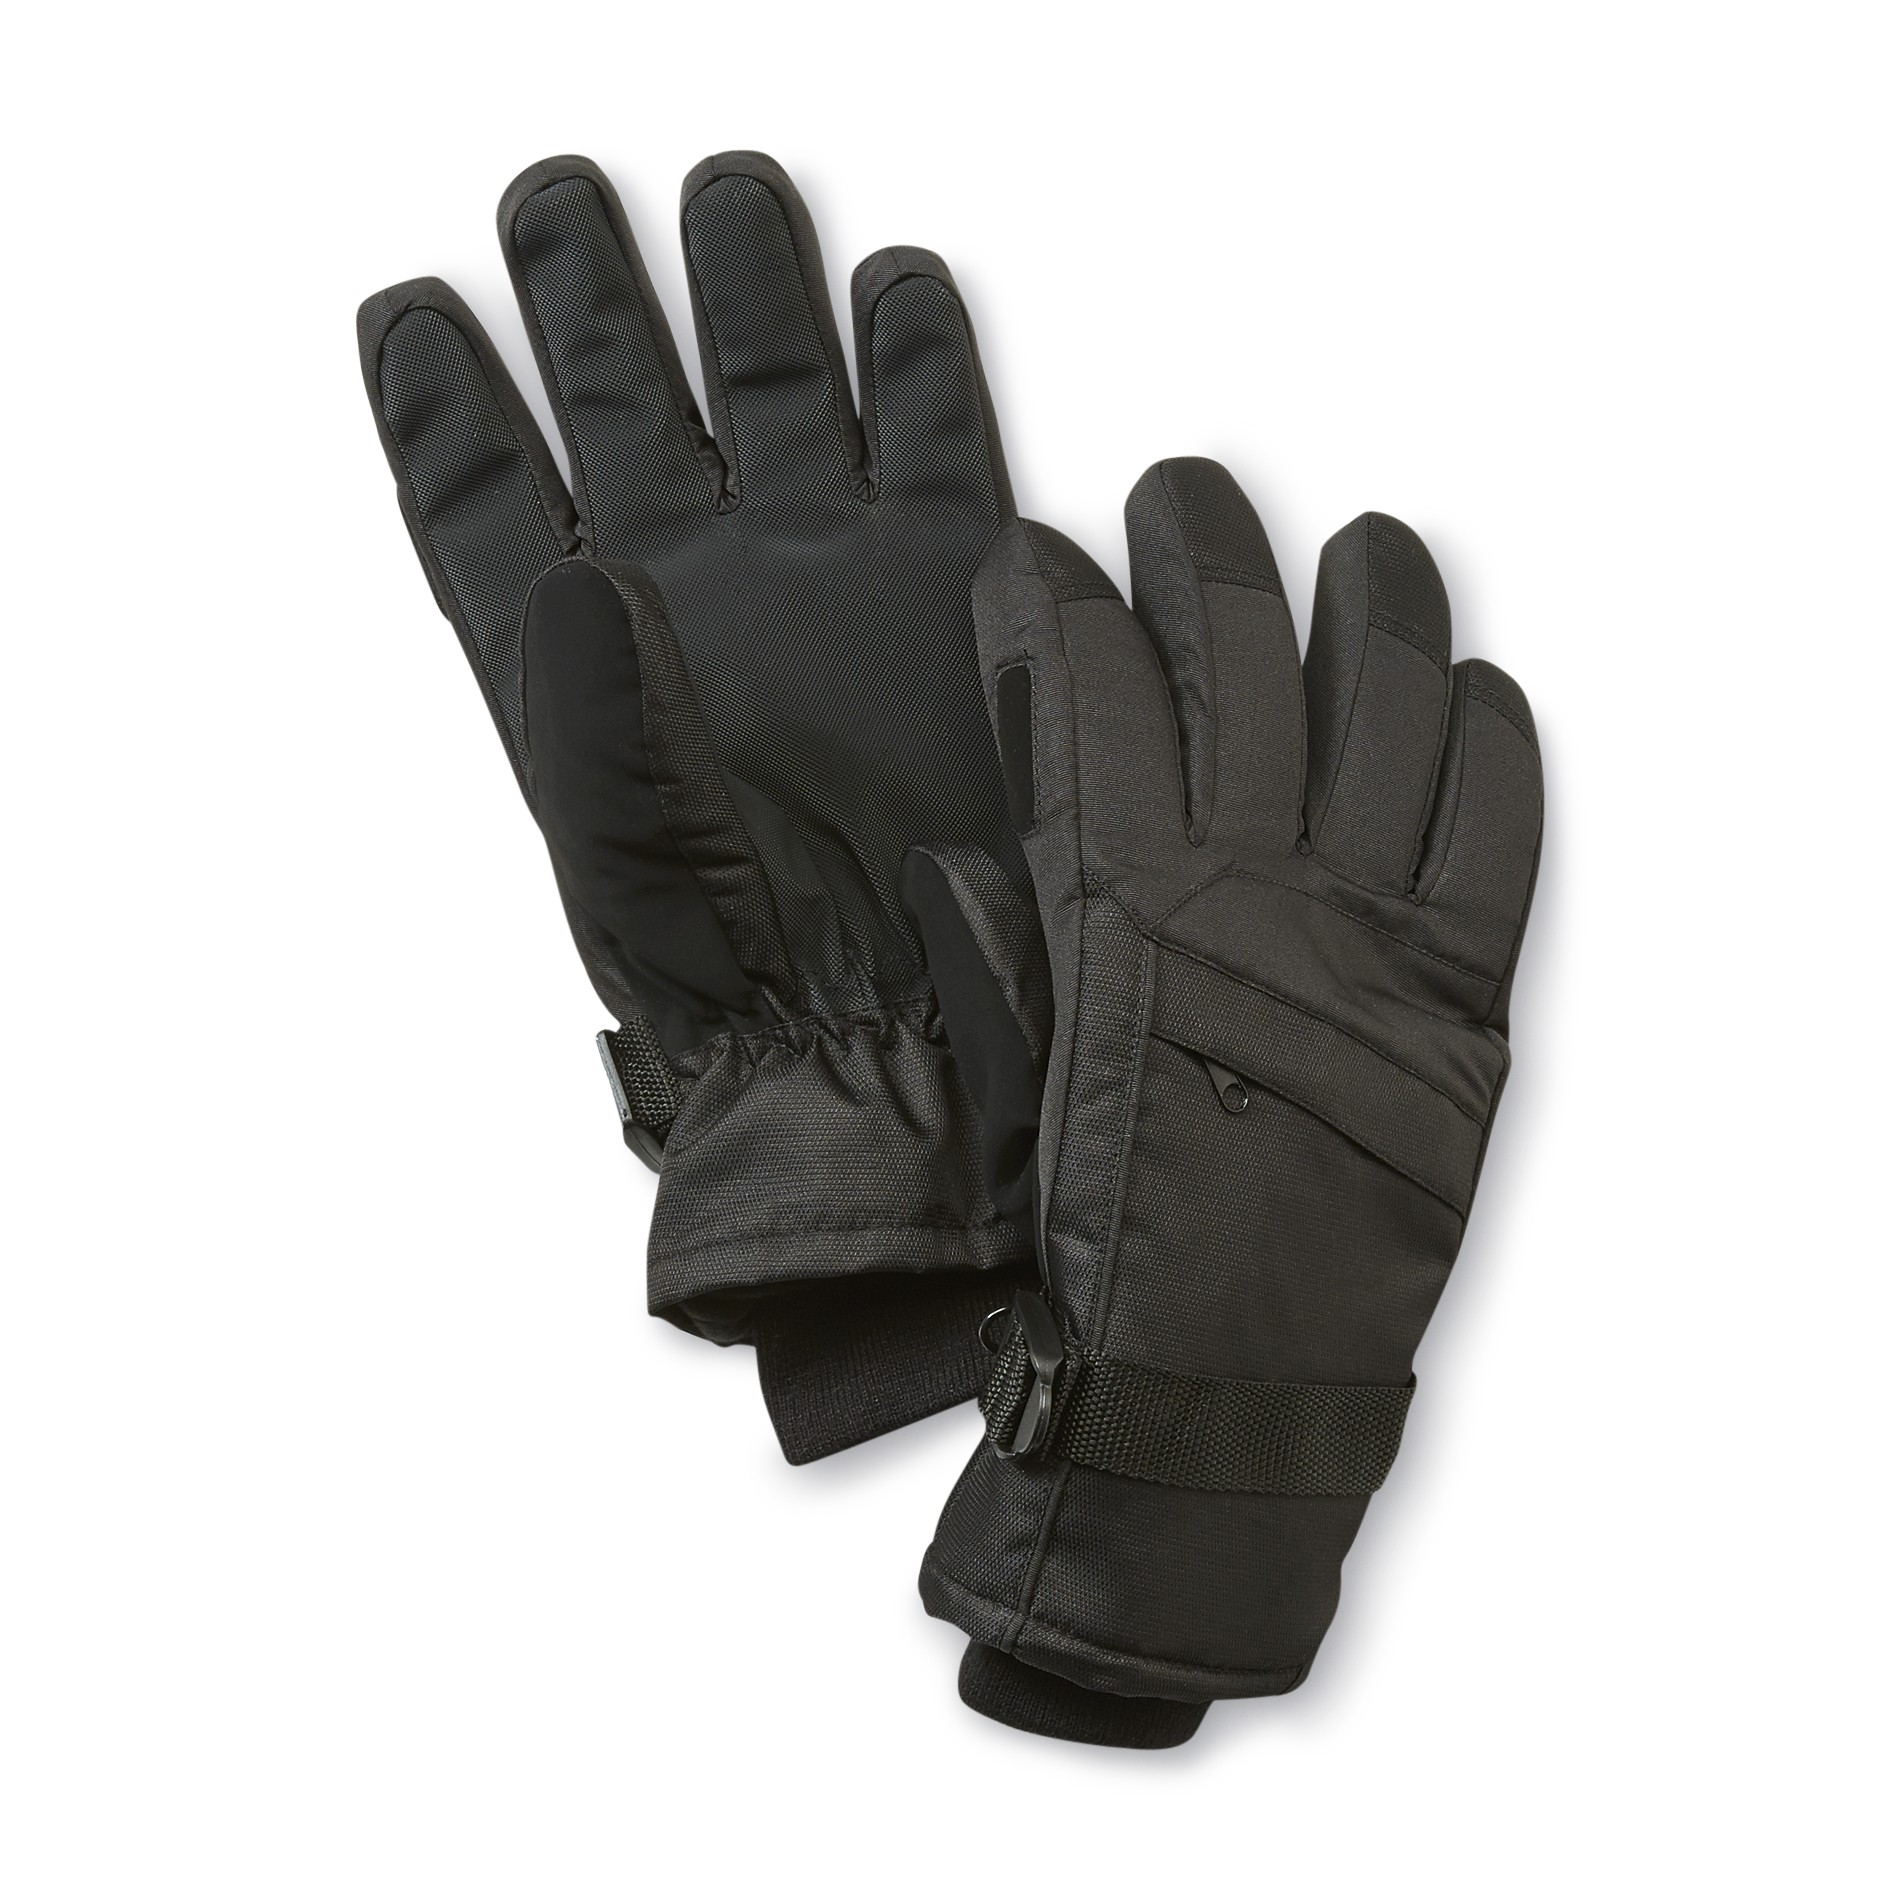 Athletech Men's Thinsulate Fleece Lined Ski Gloves